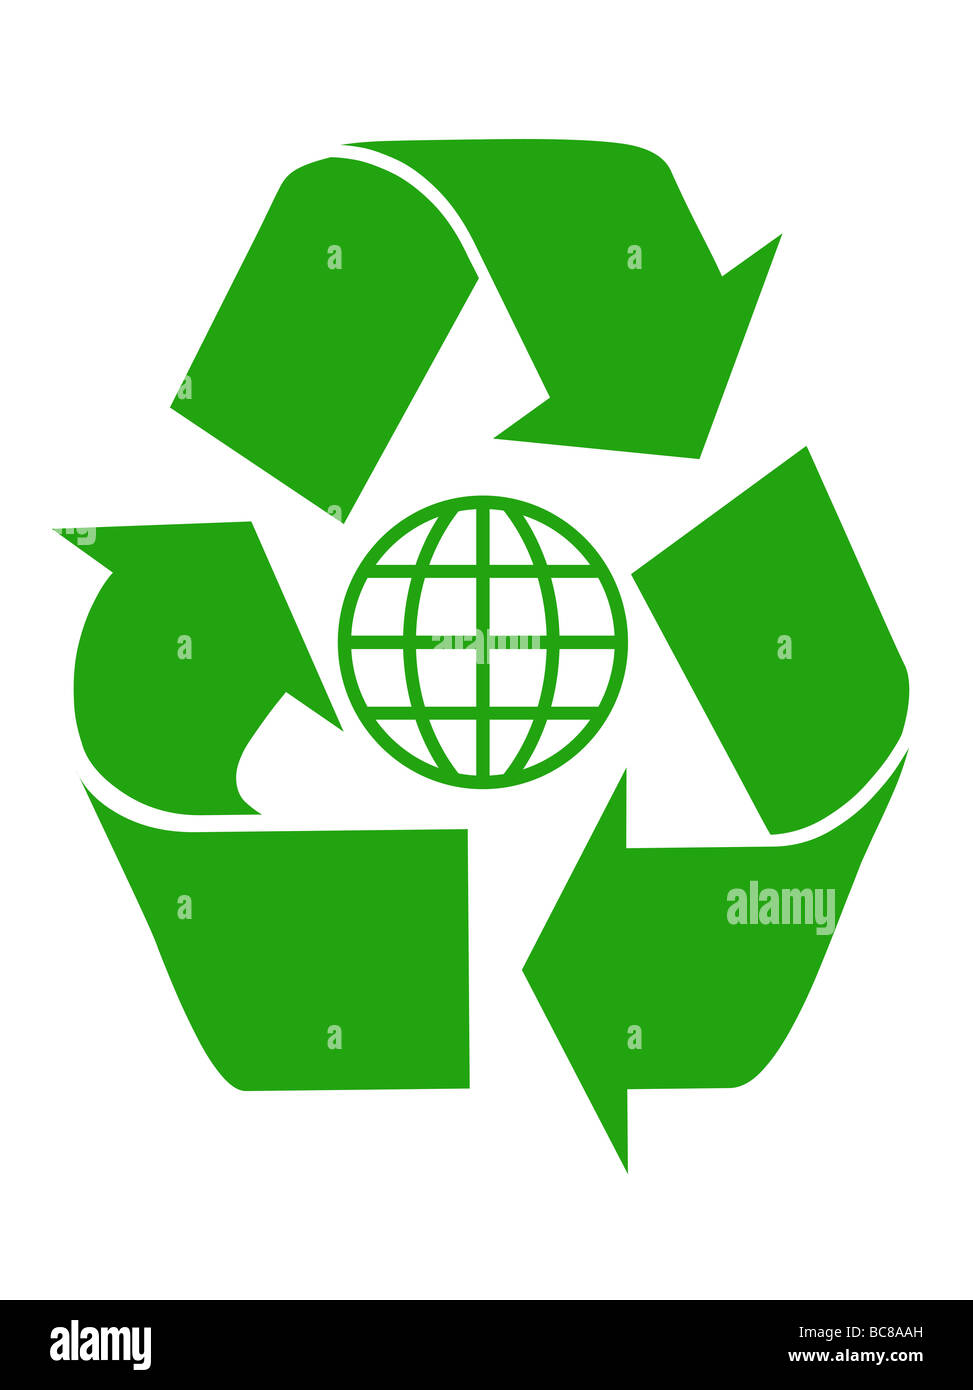 Symbole de recyclage mondial vert isolé sur fond blanc Banque D'Images